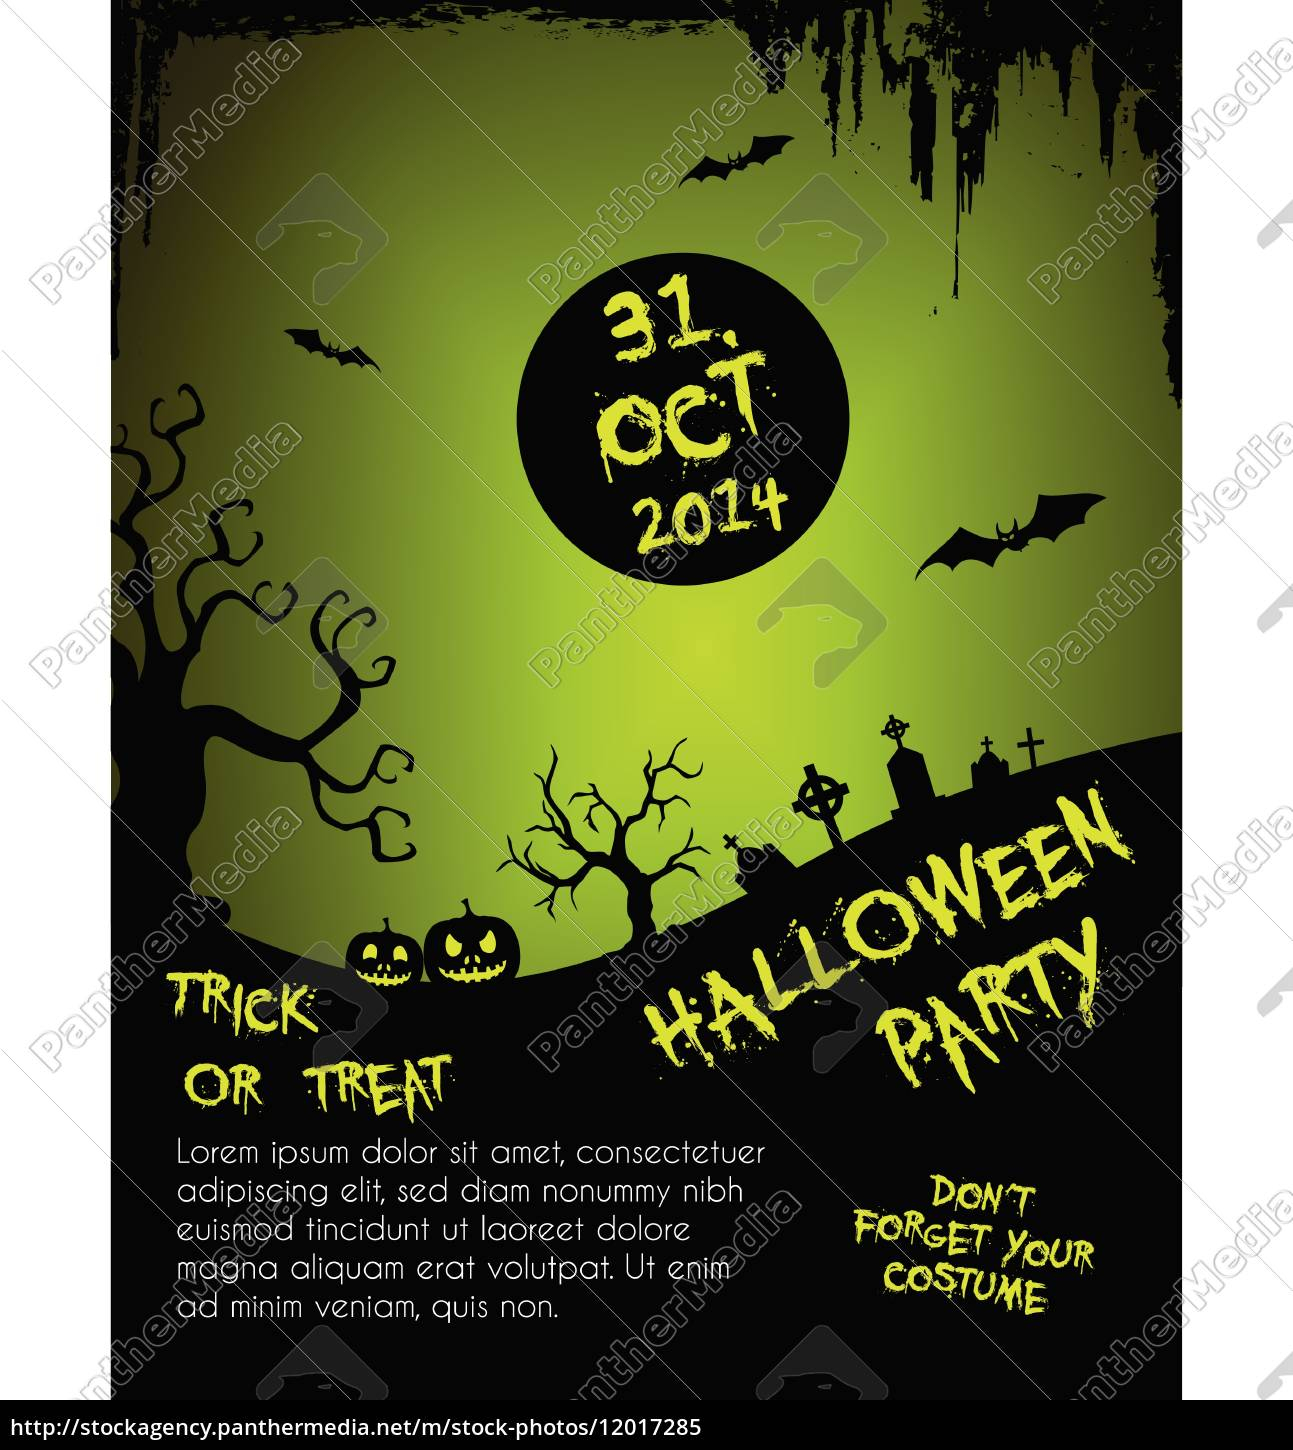 Lizenzfreie Vektorgrafik 10 - halloween party flyer vorlage Throughout Costume Party Flyer Template For Costume Party Flyer Template